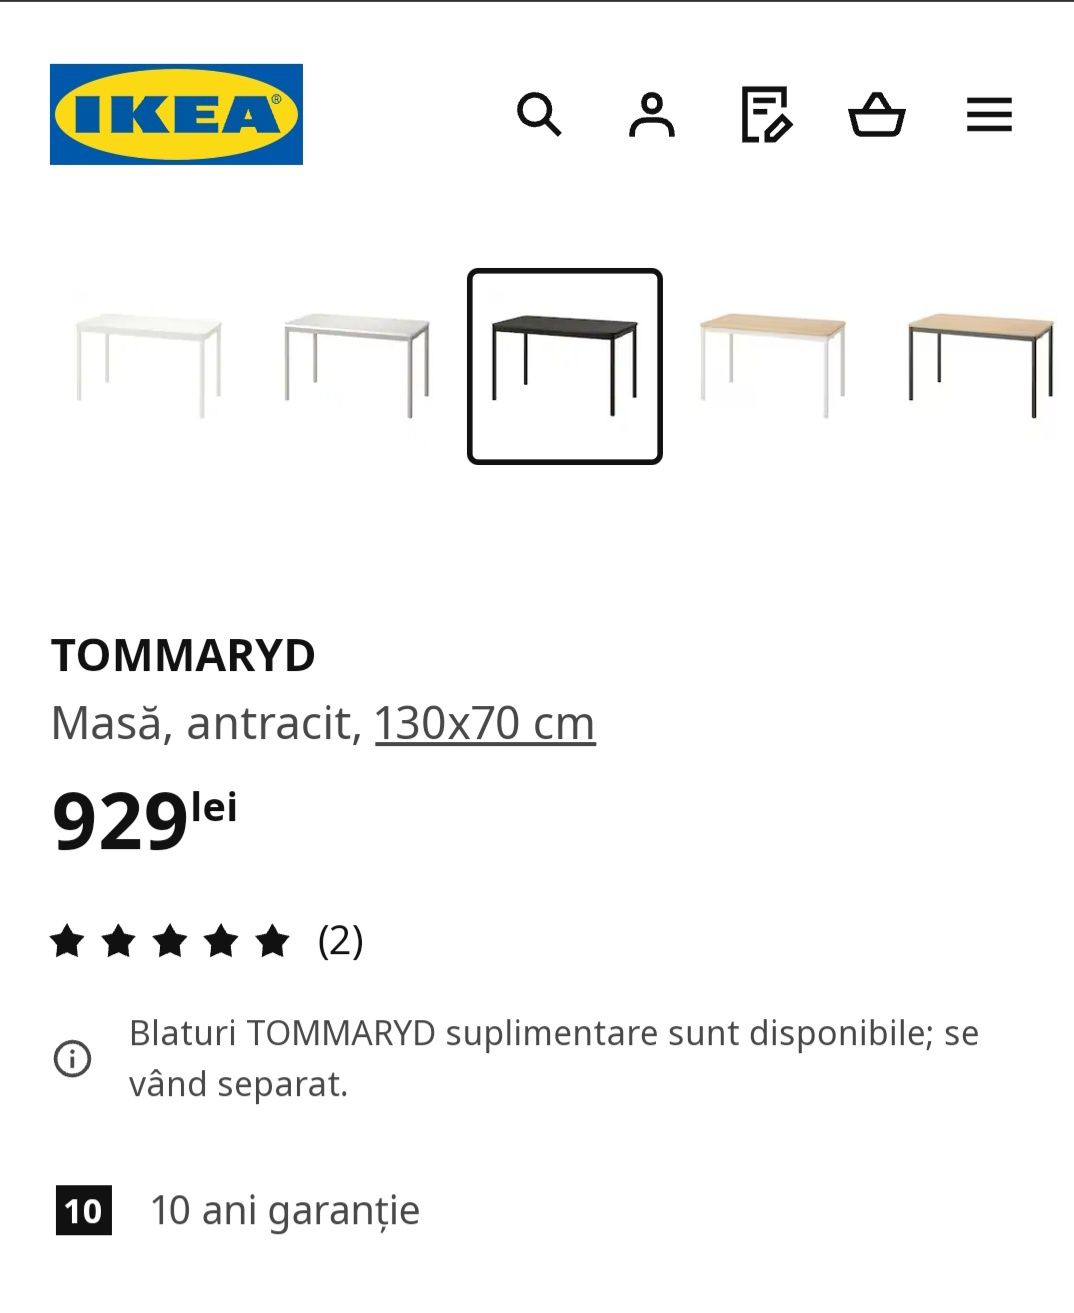 Vand masa IKEA TOMMARYD, cu 2 scaune ODGER, aproape noi